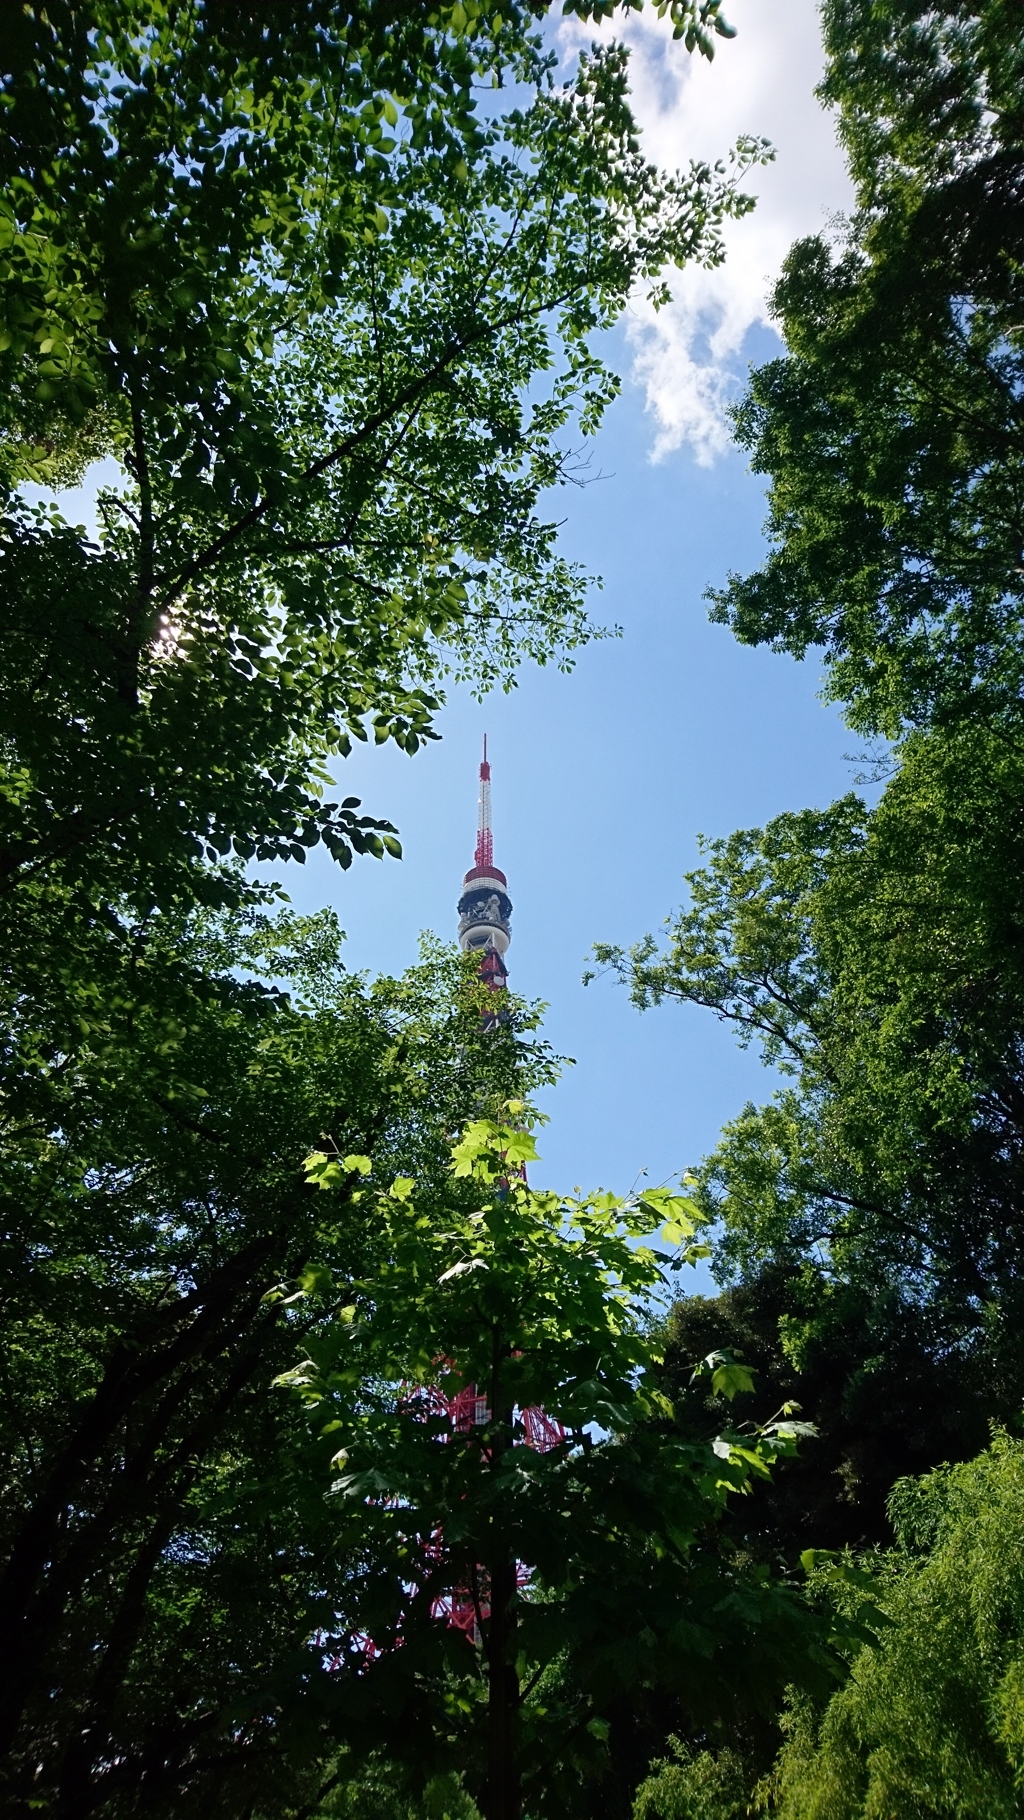 緑の東京タワー